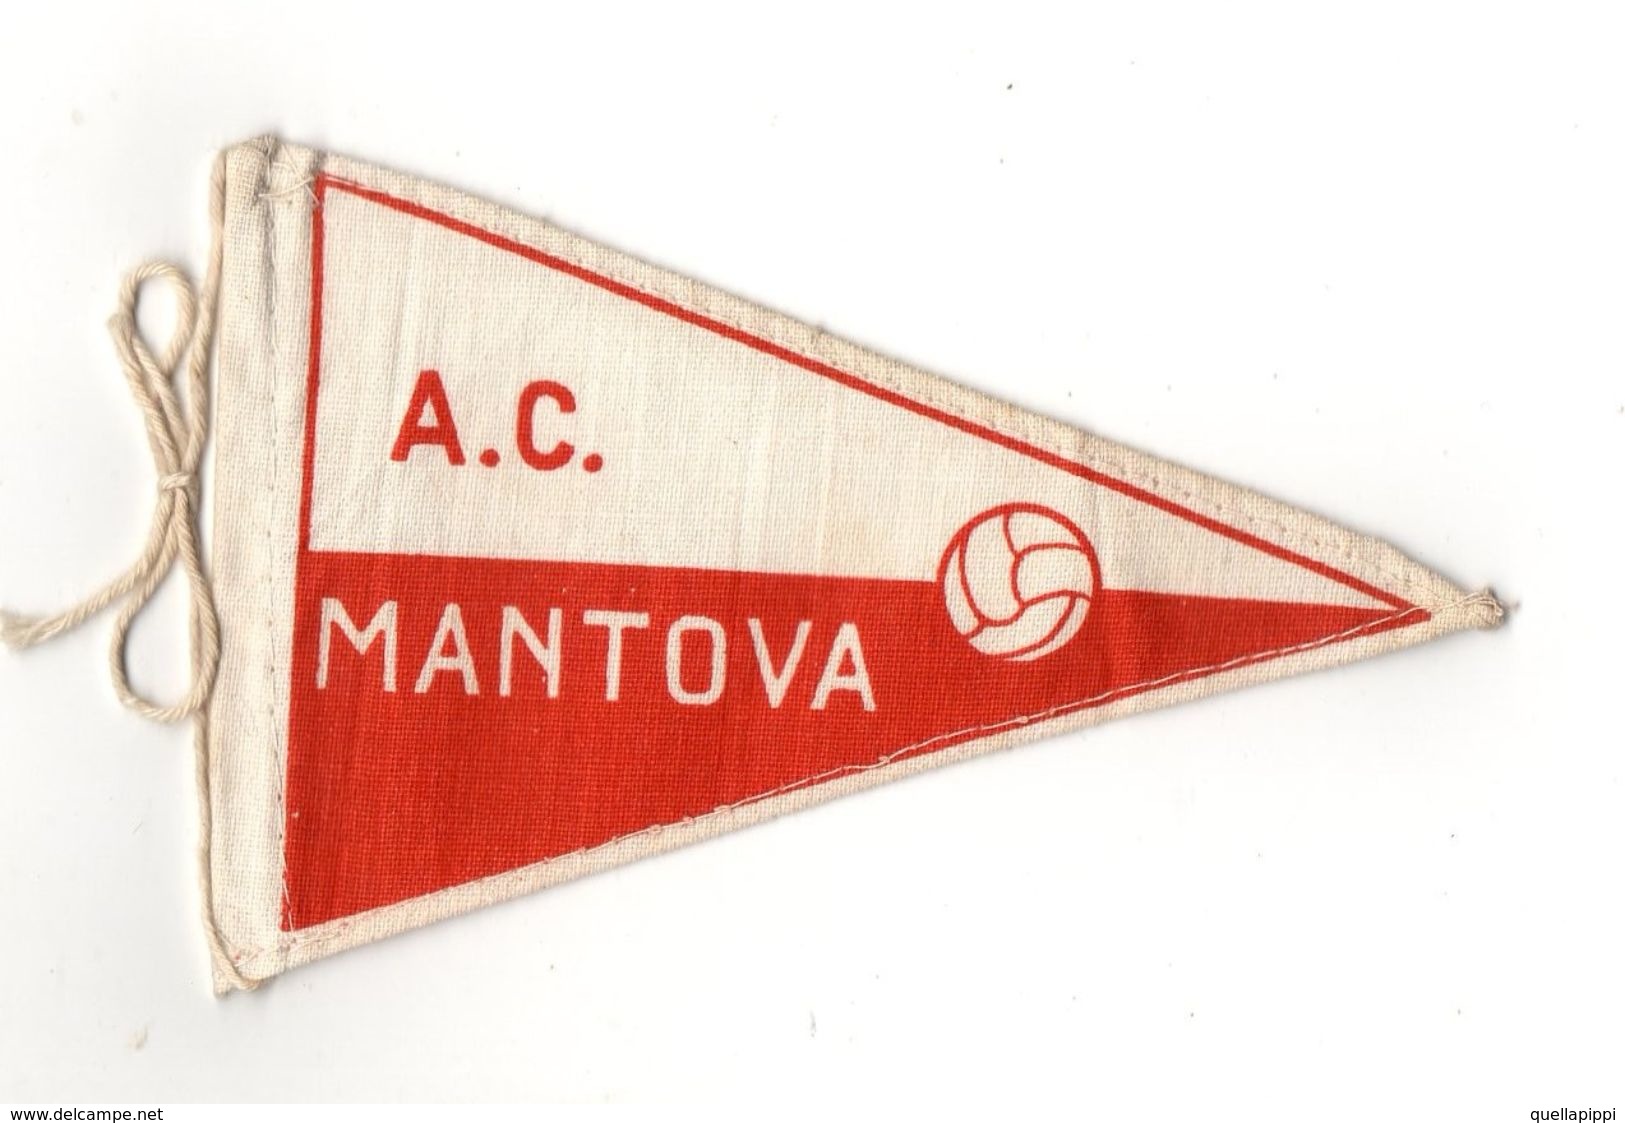 07129 "MANTOVA A.C. FOOTBALL CLUB - BANDIERINA BIFRONTE IN STOFFA CON LEGACCI" ANNI '70 ORIG. - Bekleidung, Souvenirs Und Sonstige